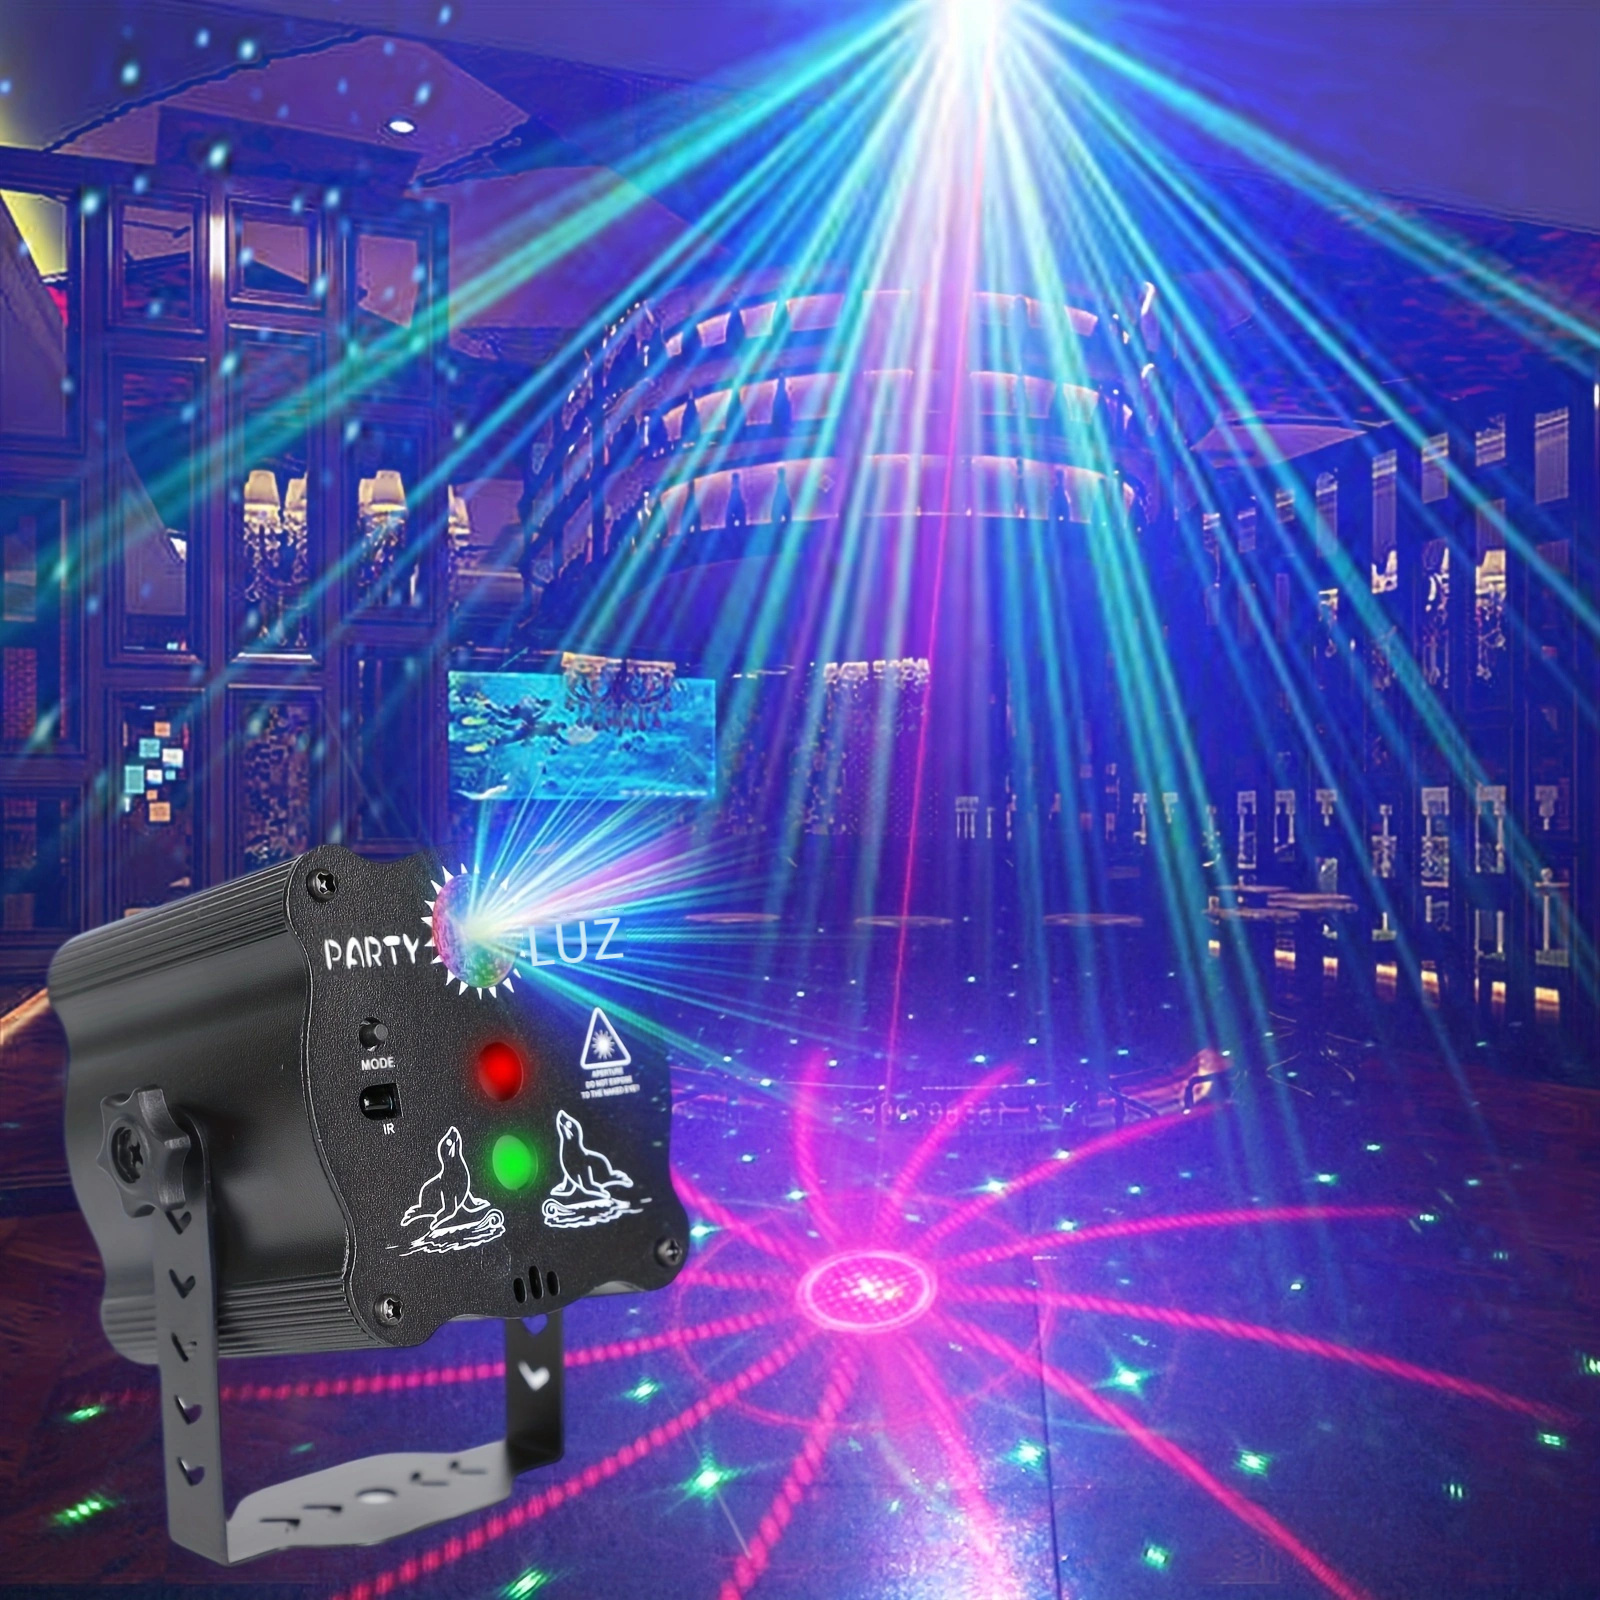  U`King Luces de DJ, 4 luces de fiesta con efecto de haz  activado por sonido DJ RGBY LED proyector luces de fiesta luces de música  por control DMX para bailar cumpleaños